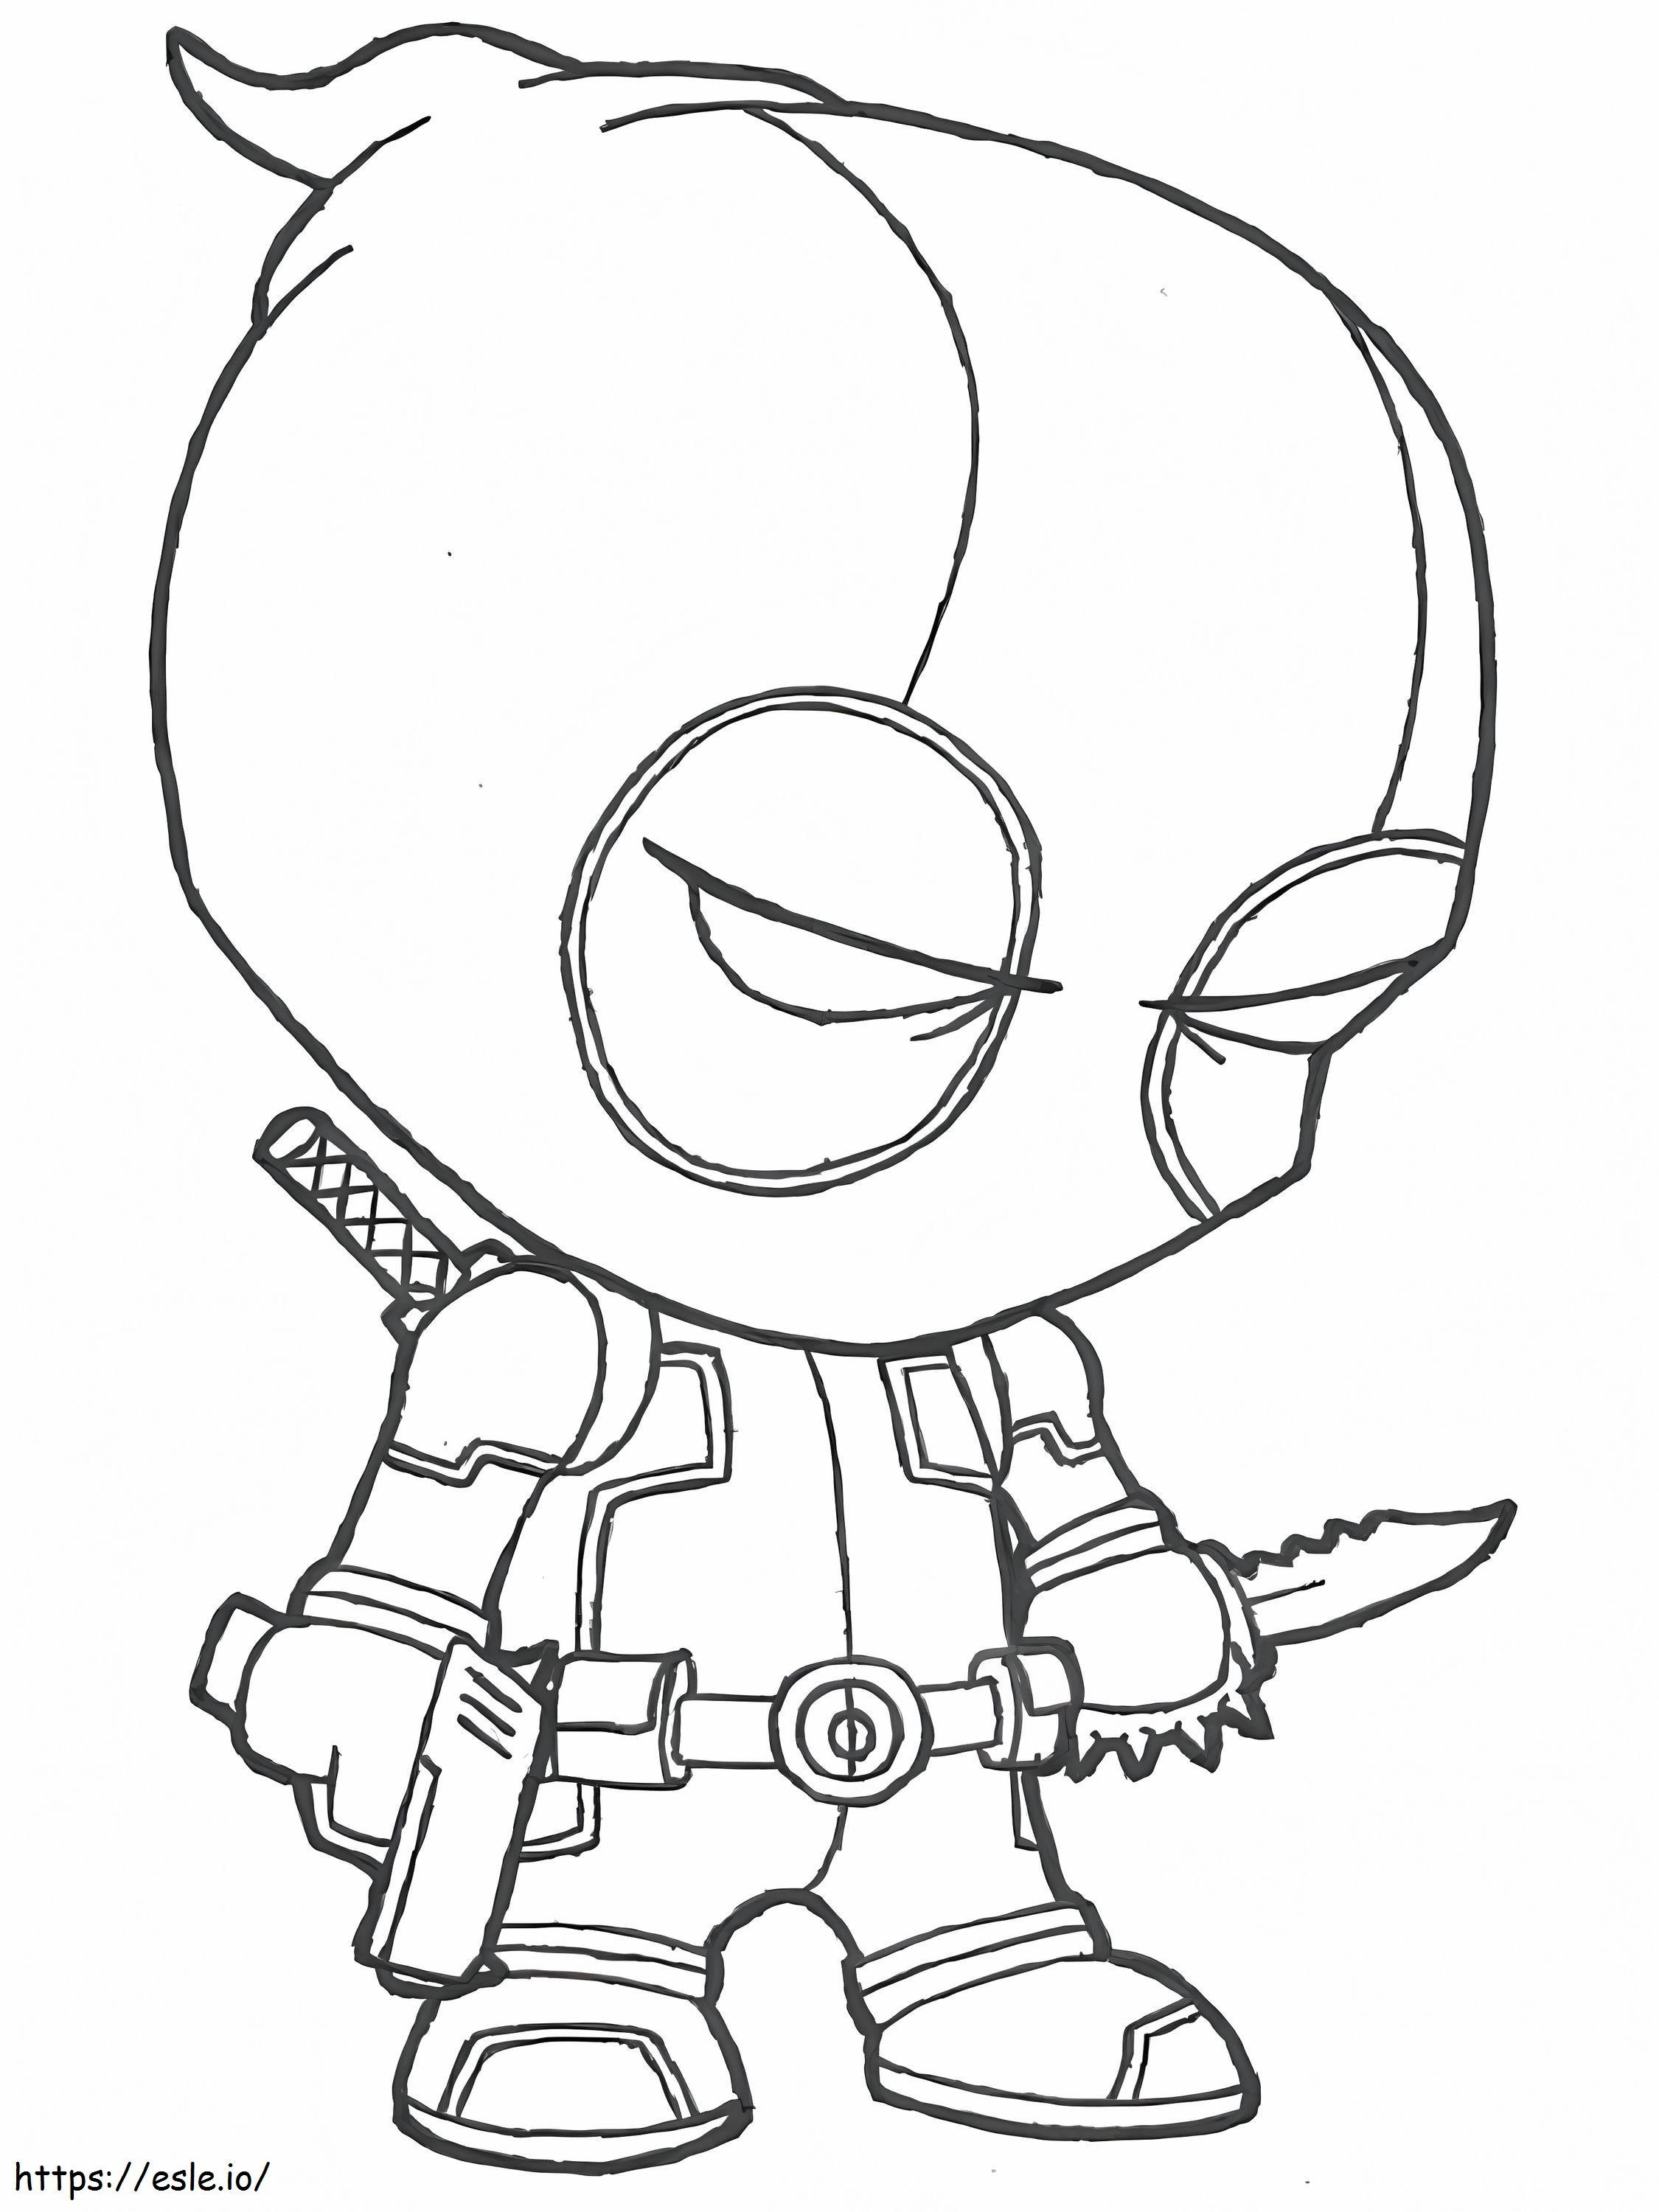 Silahlı ve Bıçaklı Chibi Deadpool boyama